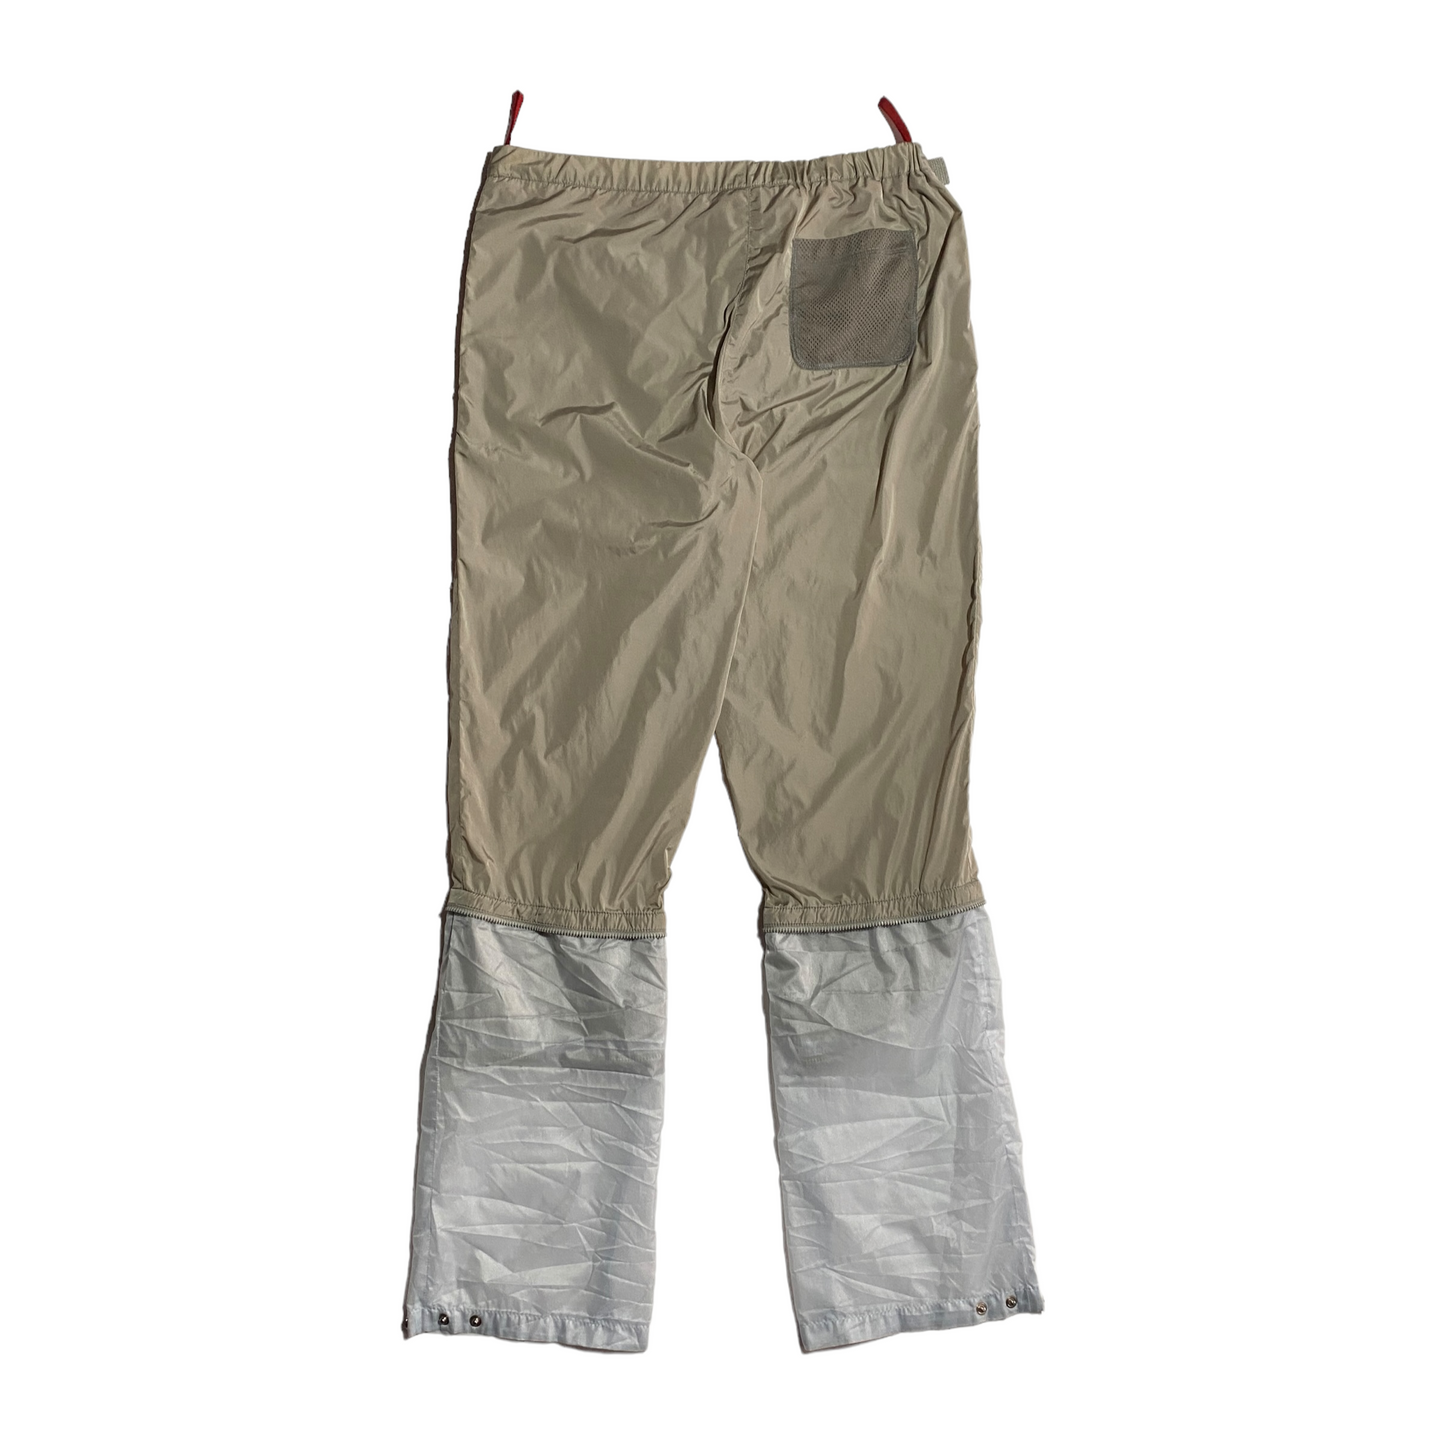 S/S 2000 Prada Sport Foldable Tech Nylon Pants (38W)